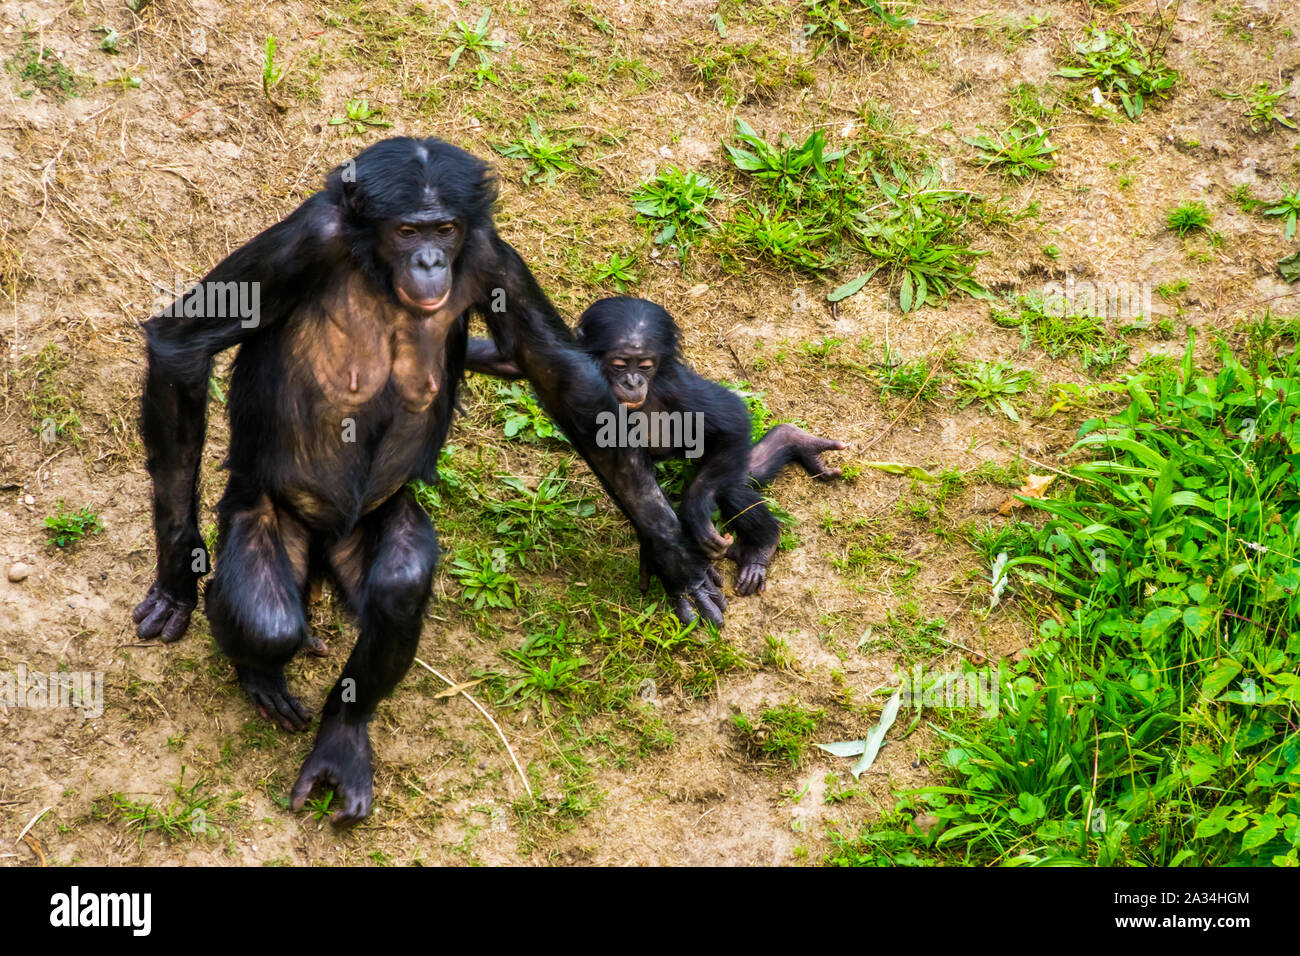 Mère bonobo à marcher ensemble avec son nourrisson, des singes, des chimpanzés pygmées bébé, endangered primate espèce d'Afrique Banque D'Images